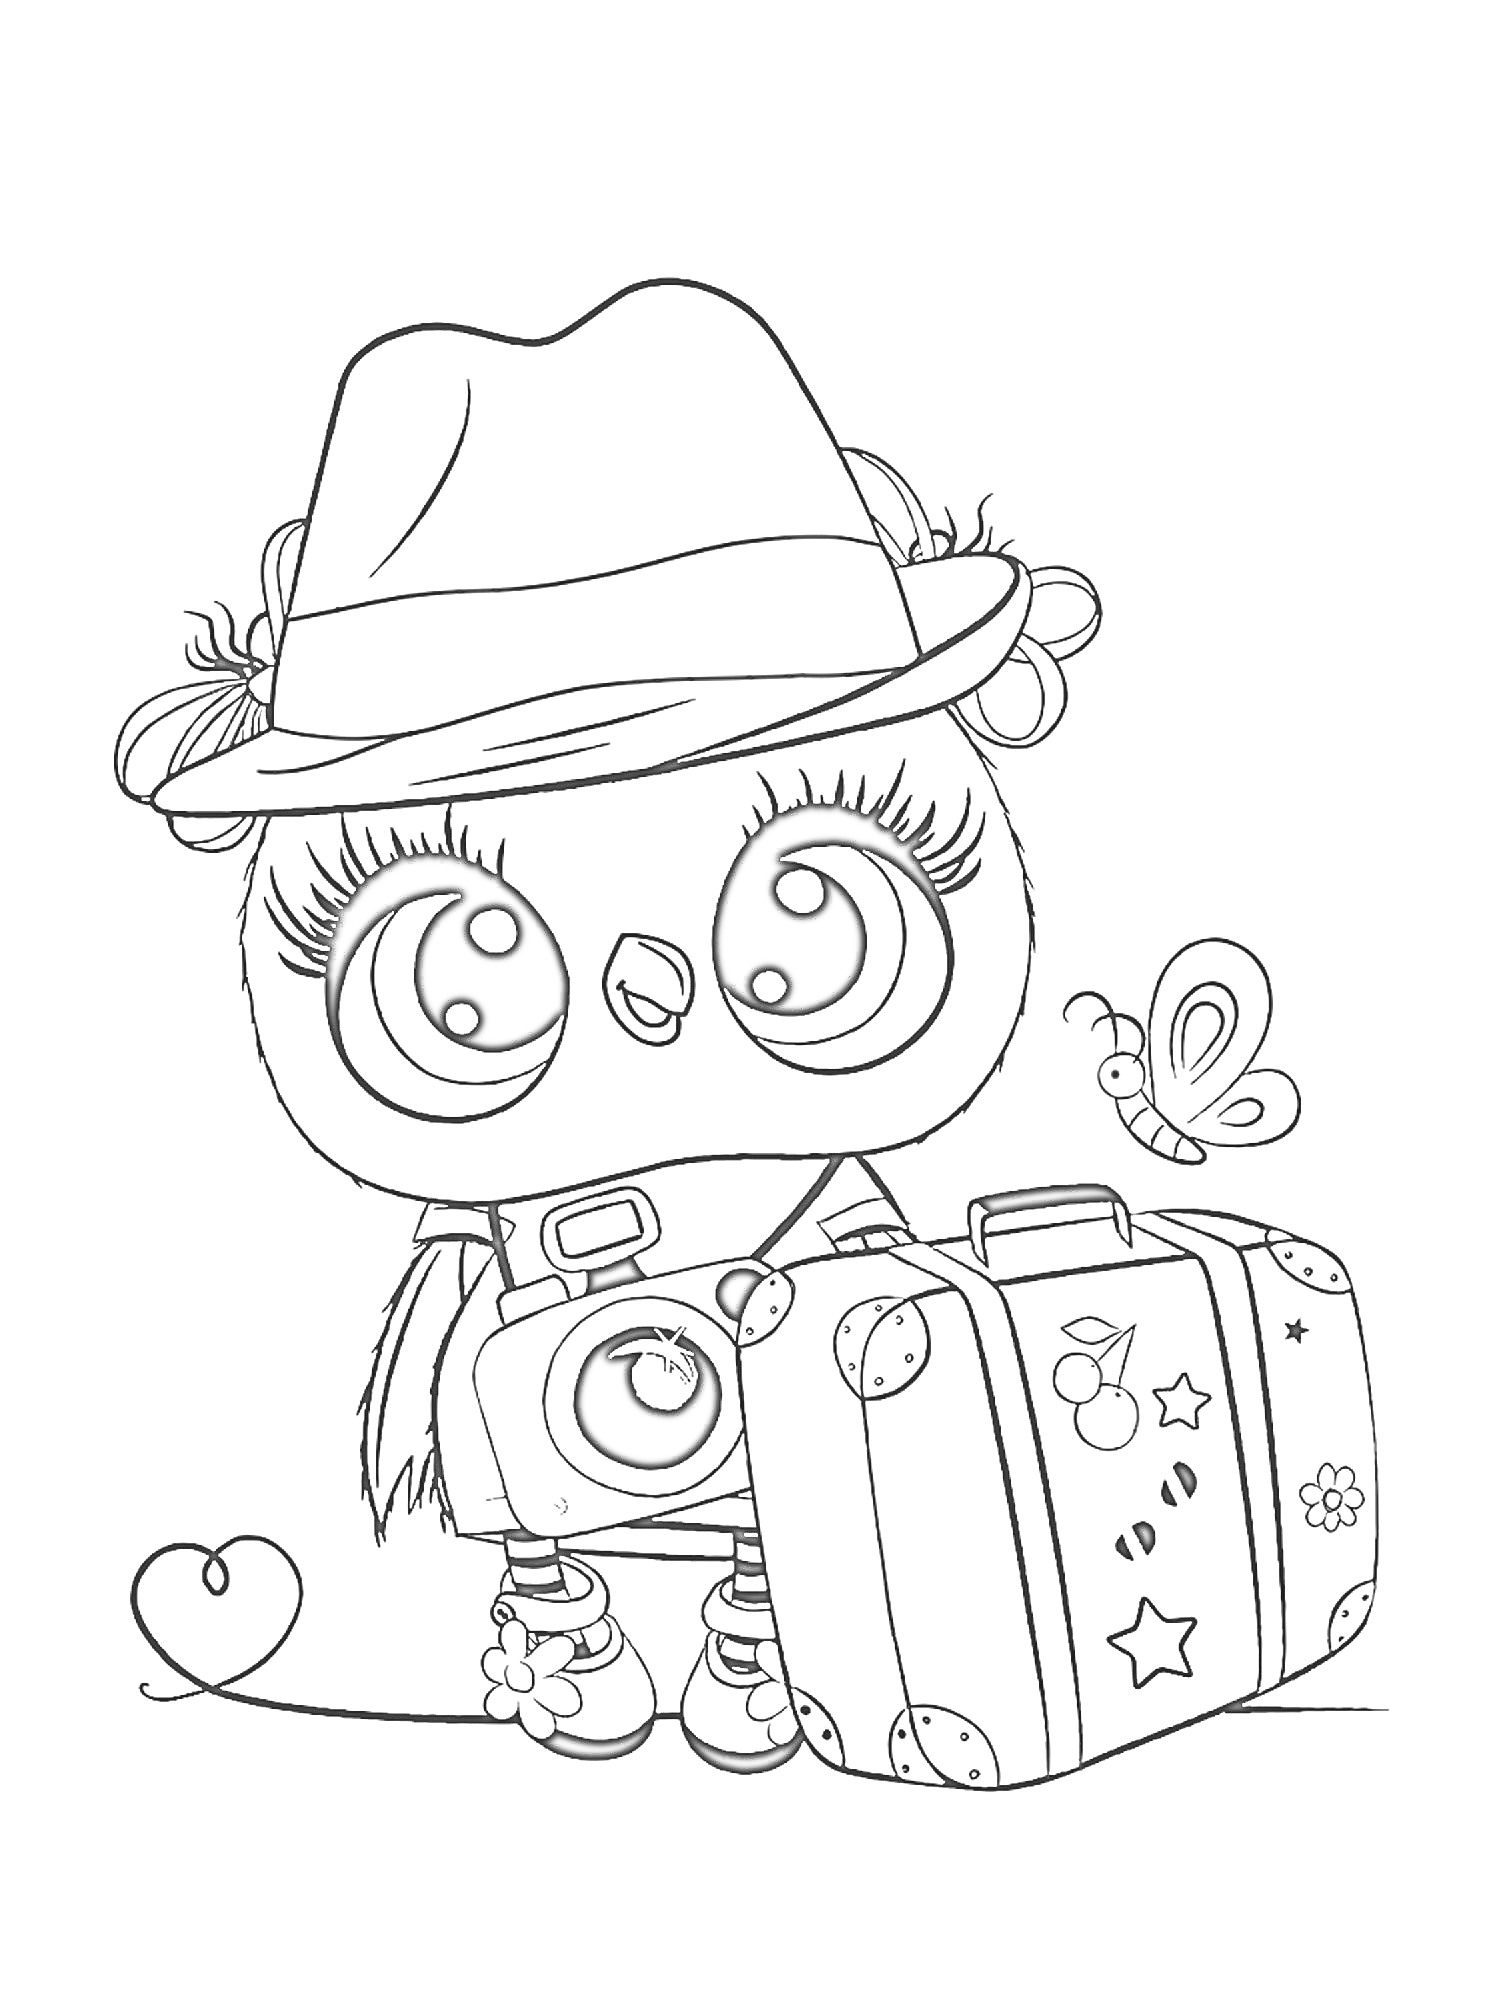 Раскраска Совенок в шляпе с фотоаппаратом и чемоданом, рядом с маленькой бабочкой и сердечком